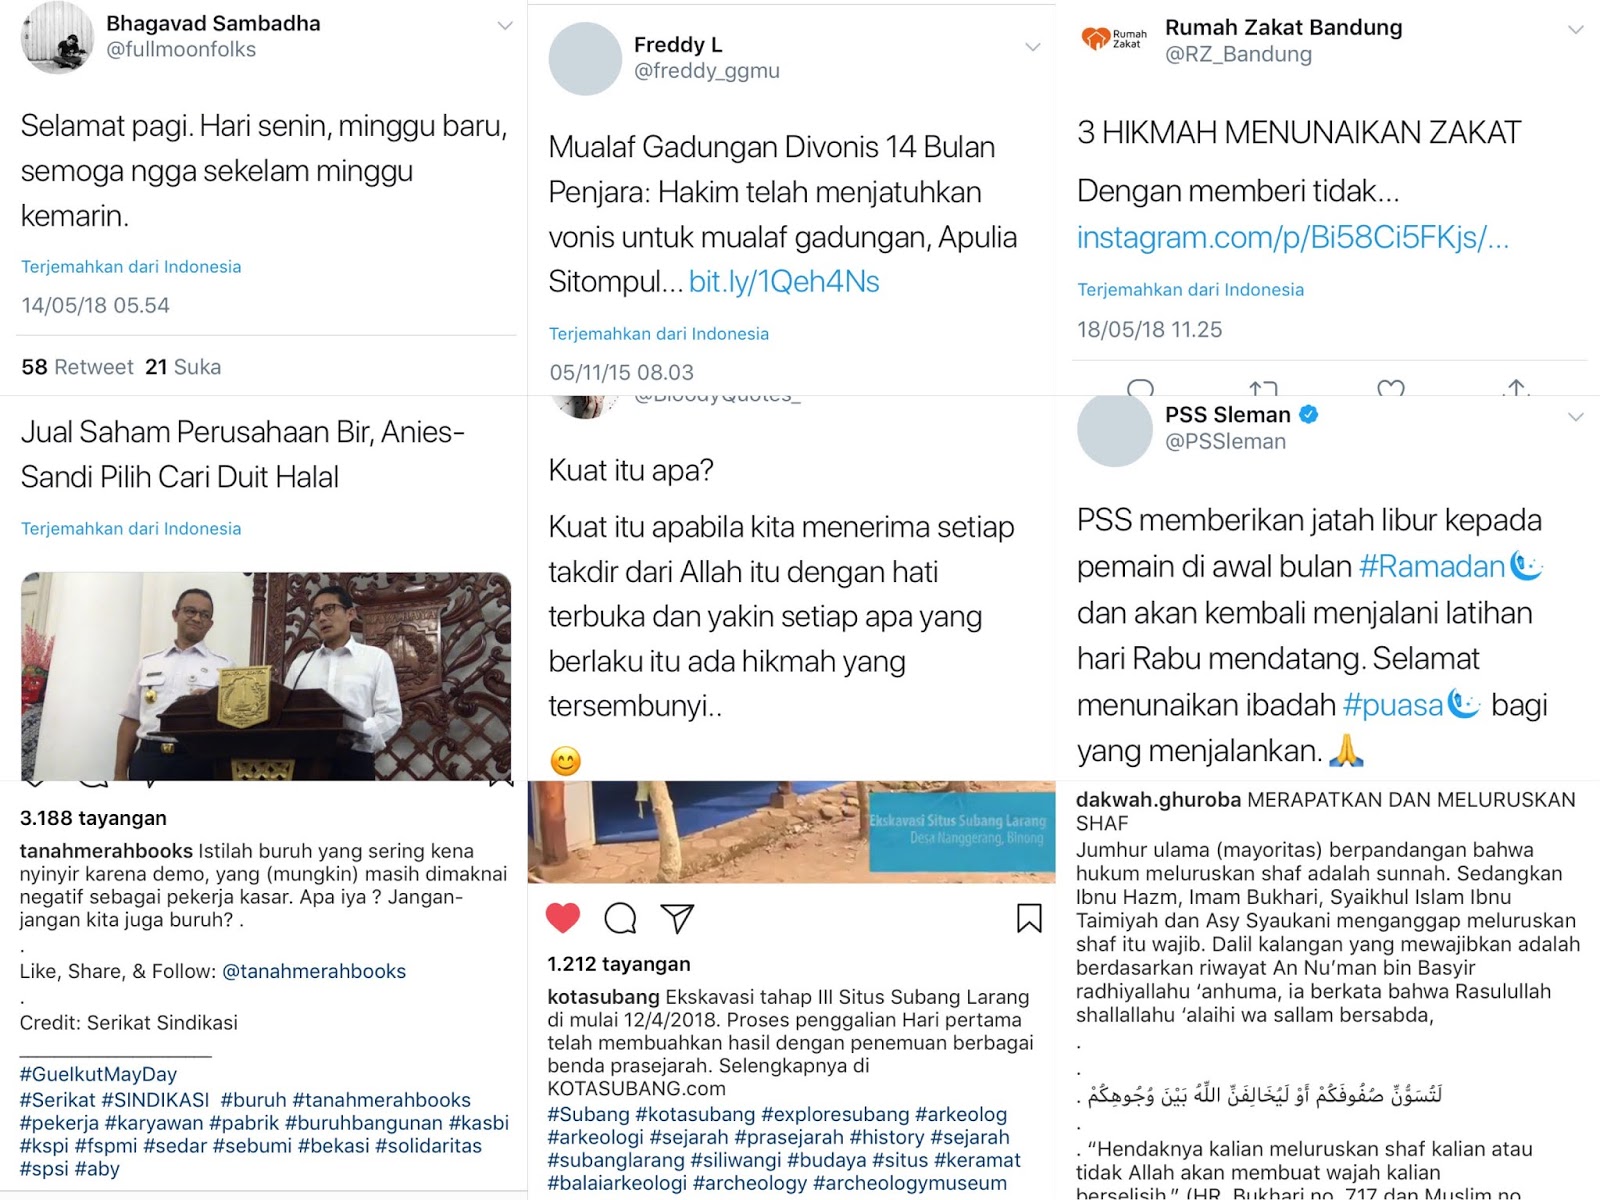 Kata Serapan Bahasa Arab di Indonesia